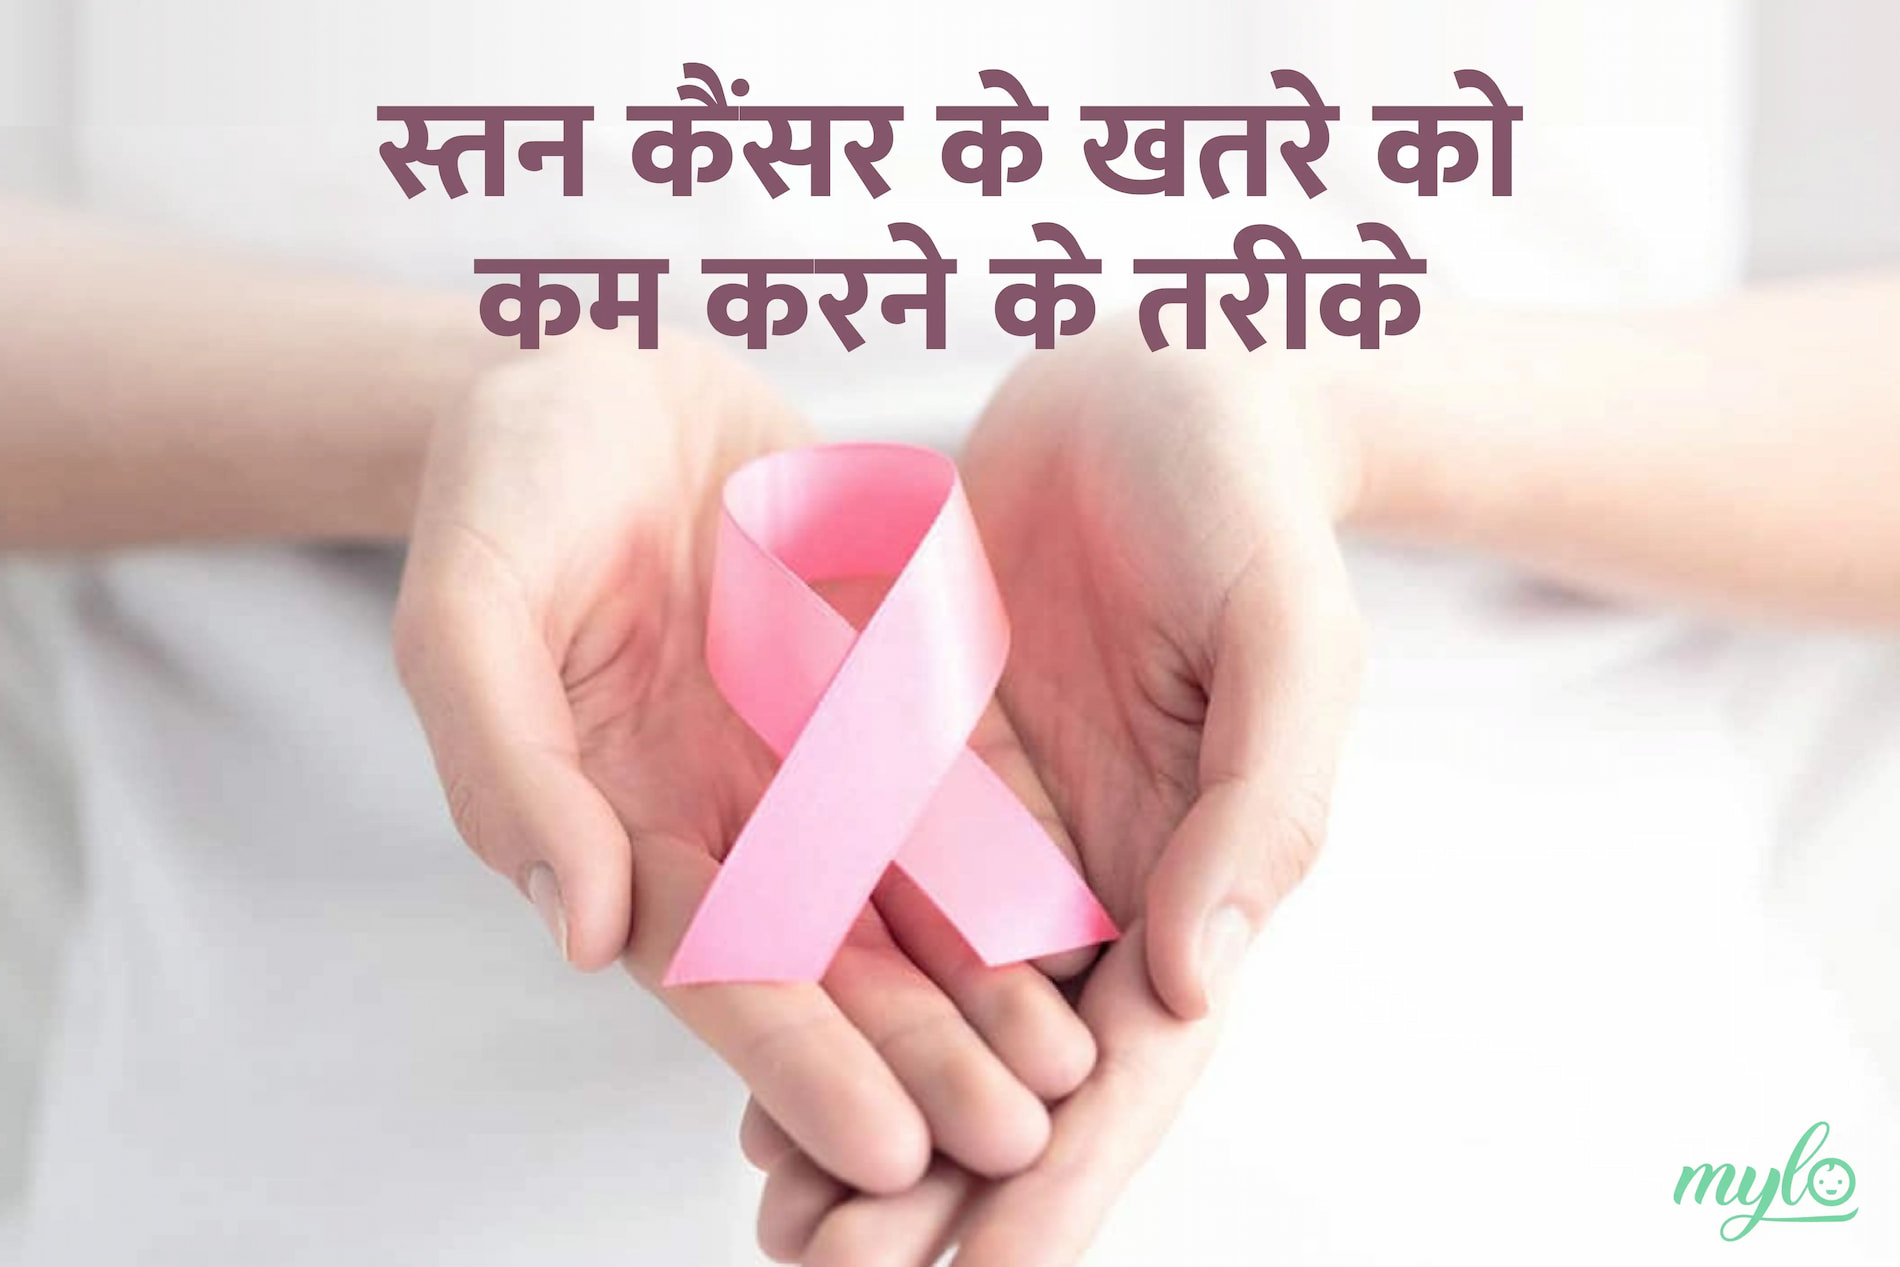 स्तन कैंसर के जोखिम को कम करने के लिए, महिलाओं को इन बातों का खास ख्याल रखना चाहिए